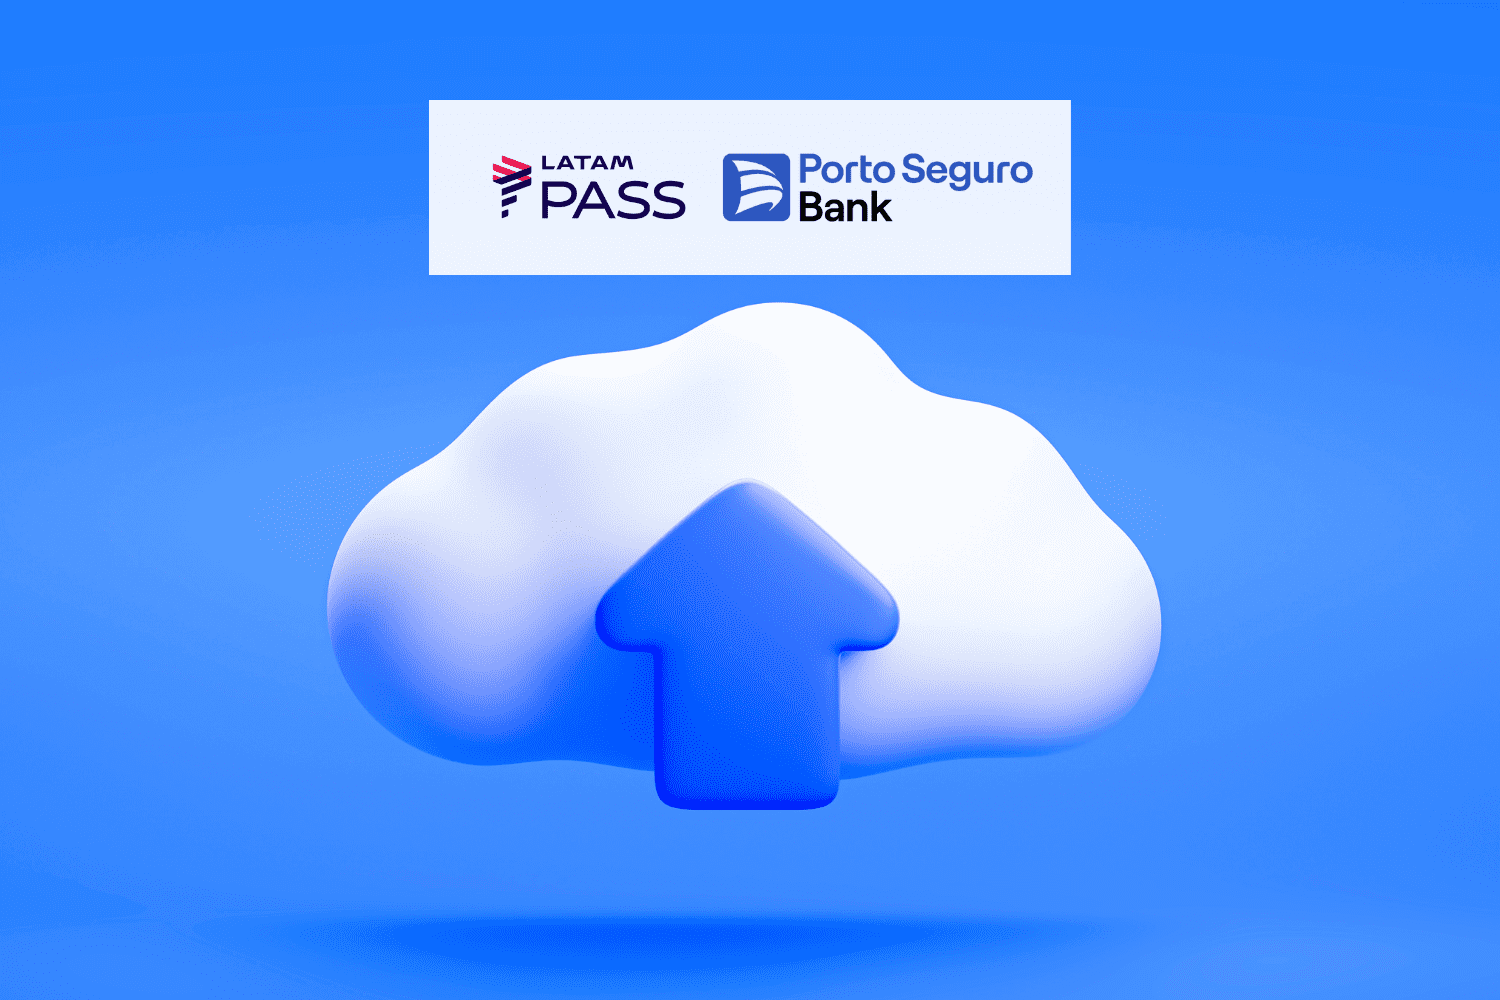 Imagem de uma nuvem com uma seta para cima com logo Latam Pass e Porto Seguro Bank